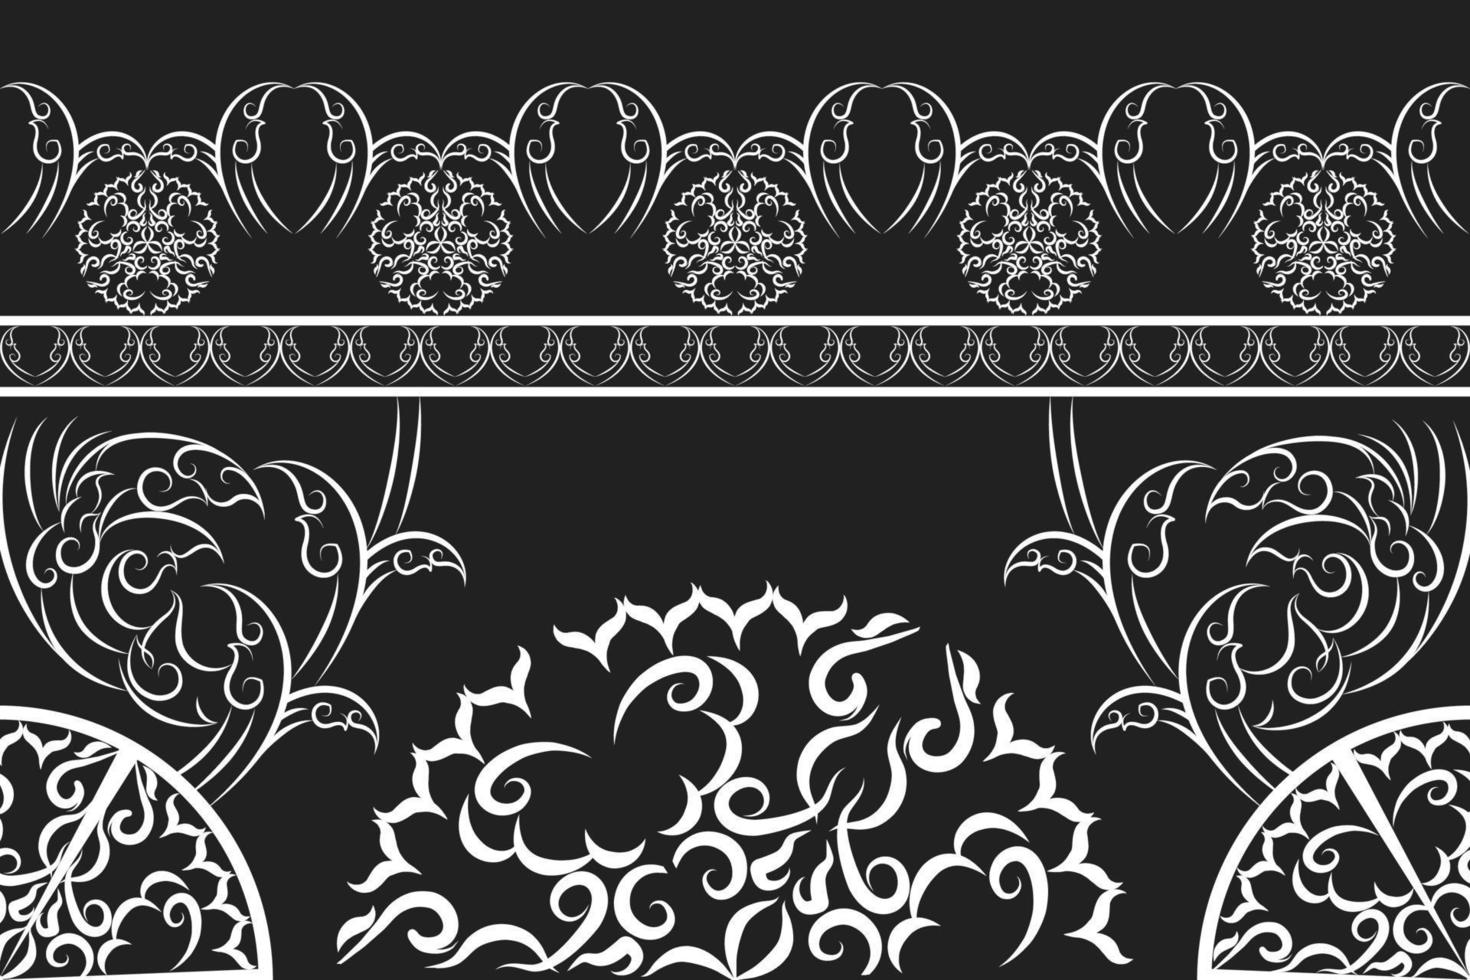 padrão de tecido étnico projetado a partir de formas geométricas padrão de tecido de estilo asiático étnico usado para decoração de casa, tapetes, uso interno e externo. vetor